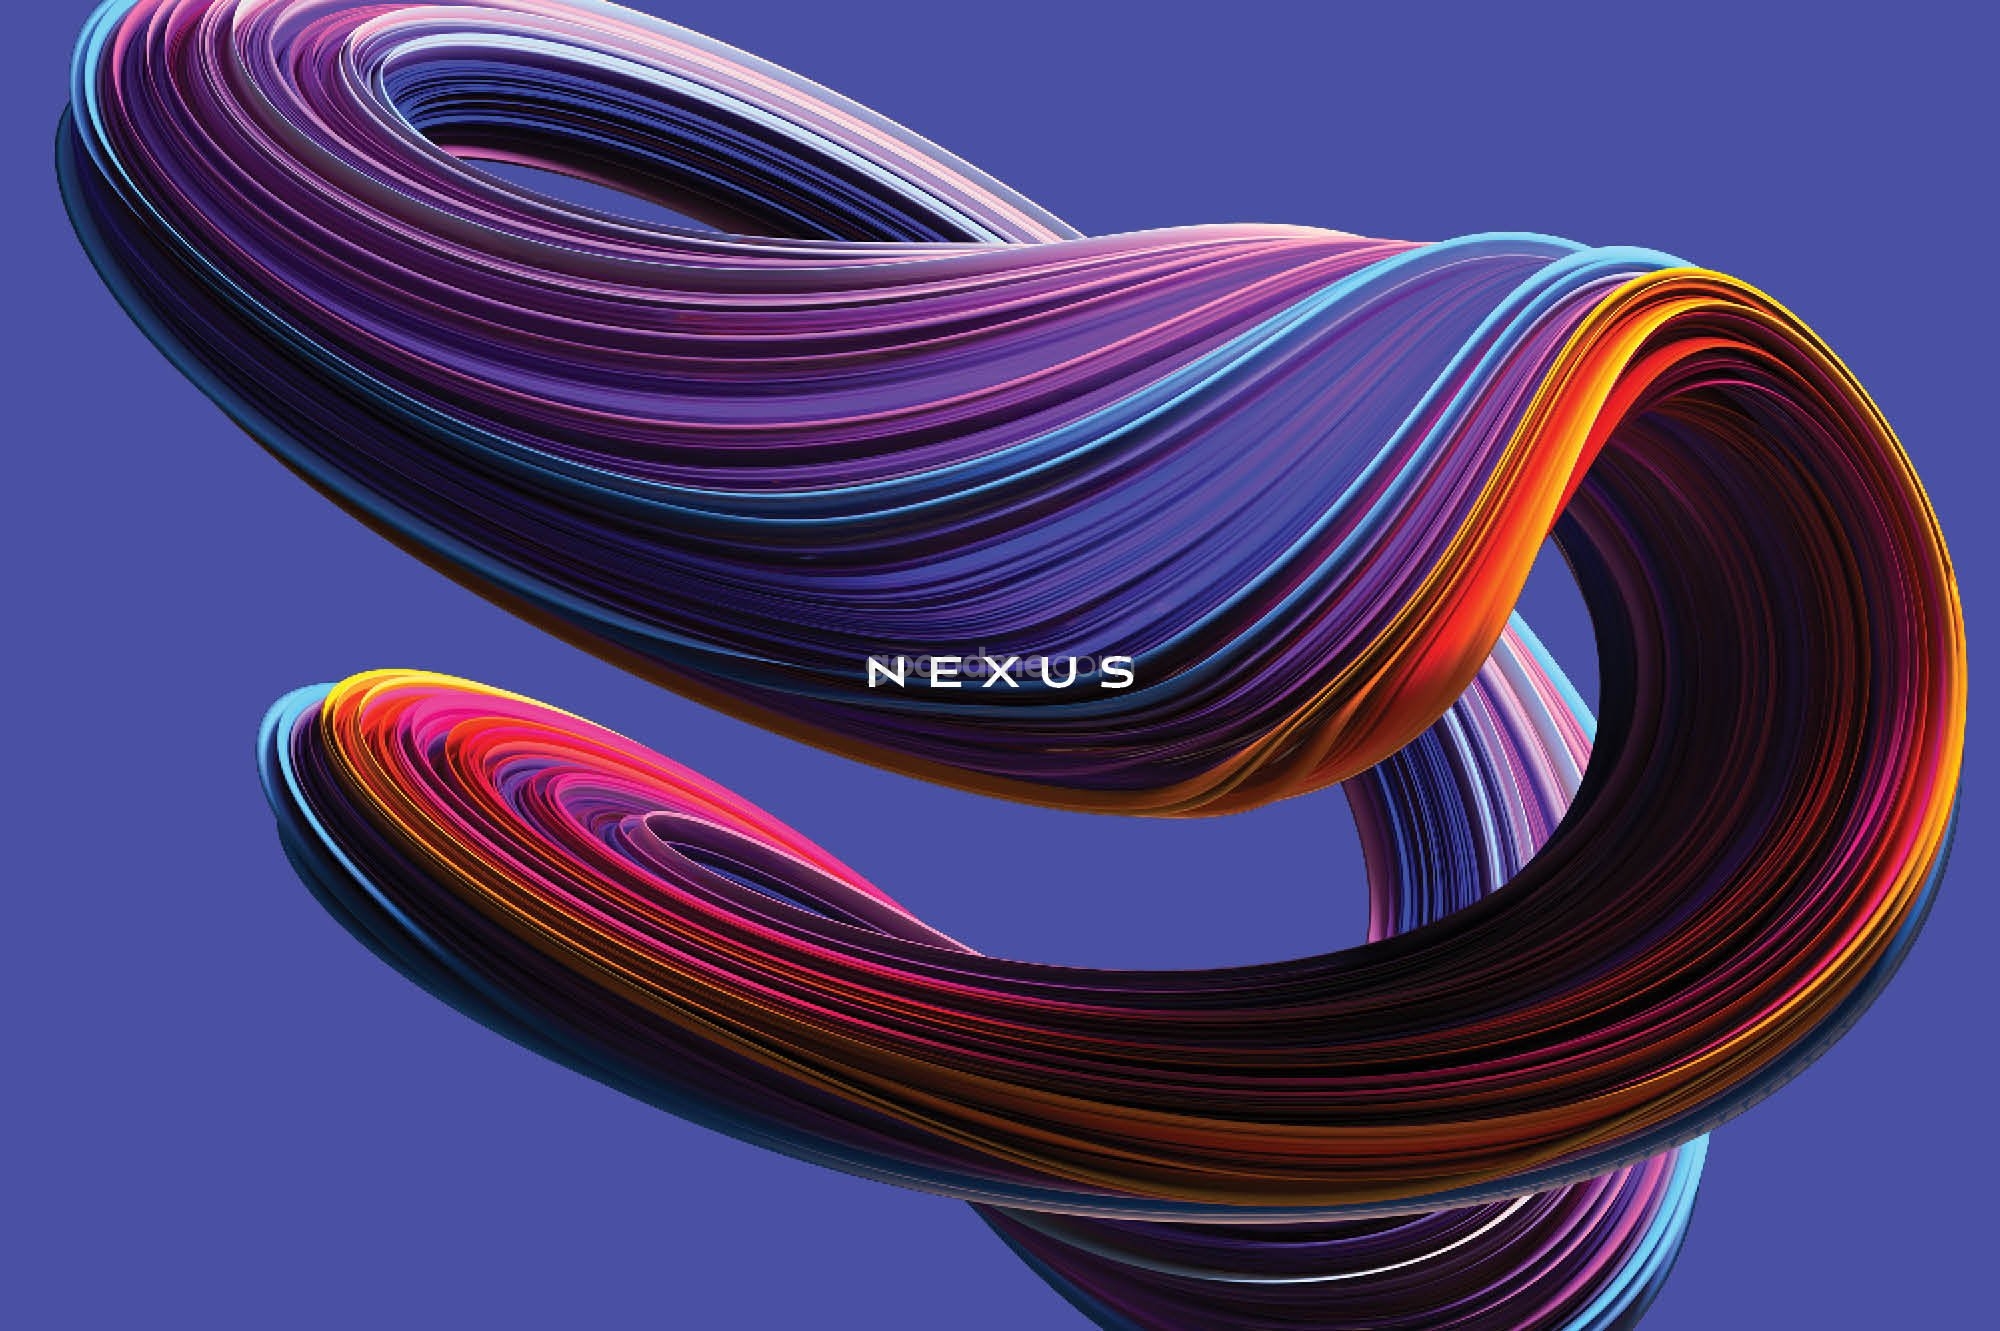 829 未来科幻3D炫彩抽象图形扭曲旋转肌理背景图片笔刷PS设计素材 Nexus Swirling Abstract Shapes